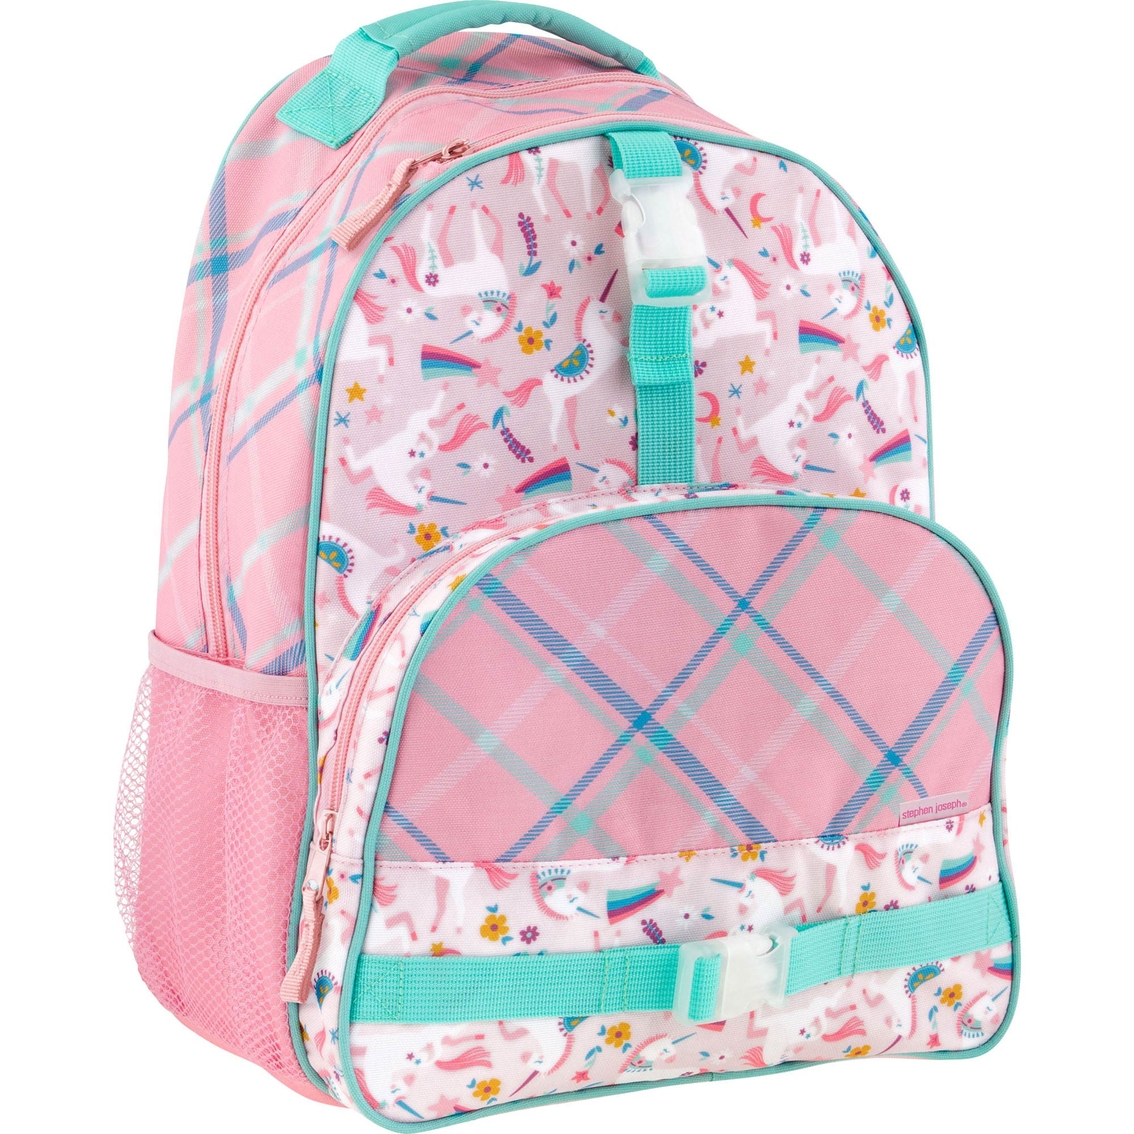 Stephen Joseph Allover Print Pink Unicorn Backpack | Backpacks ...